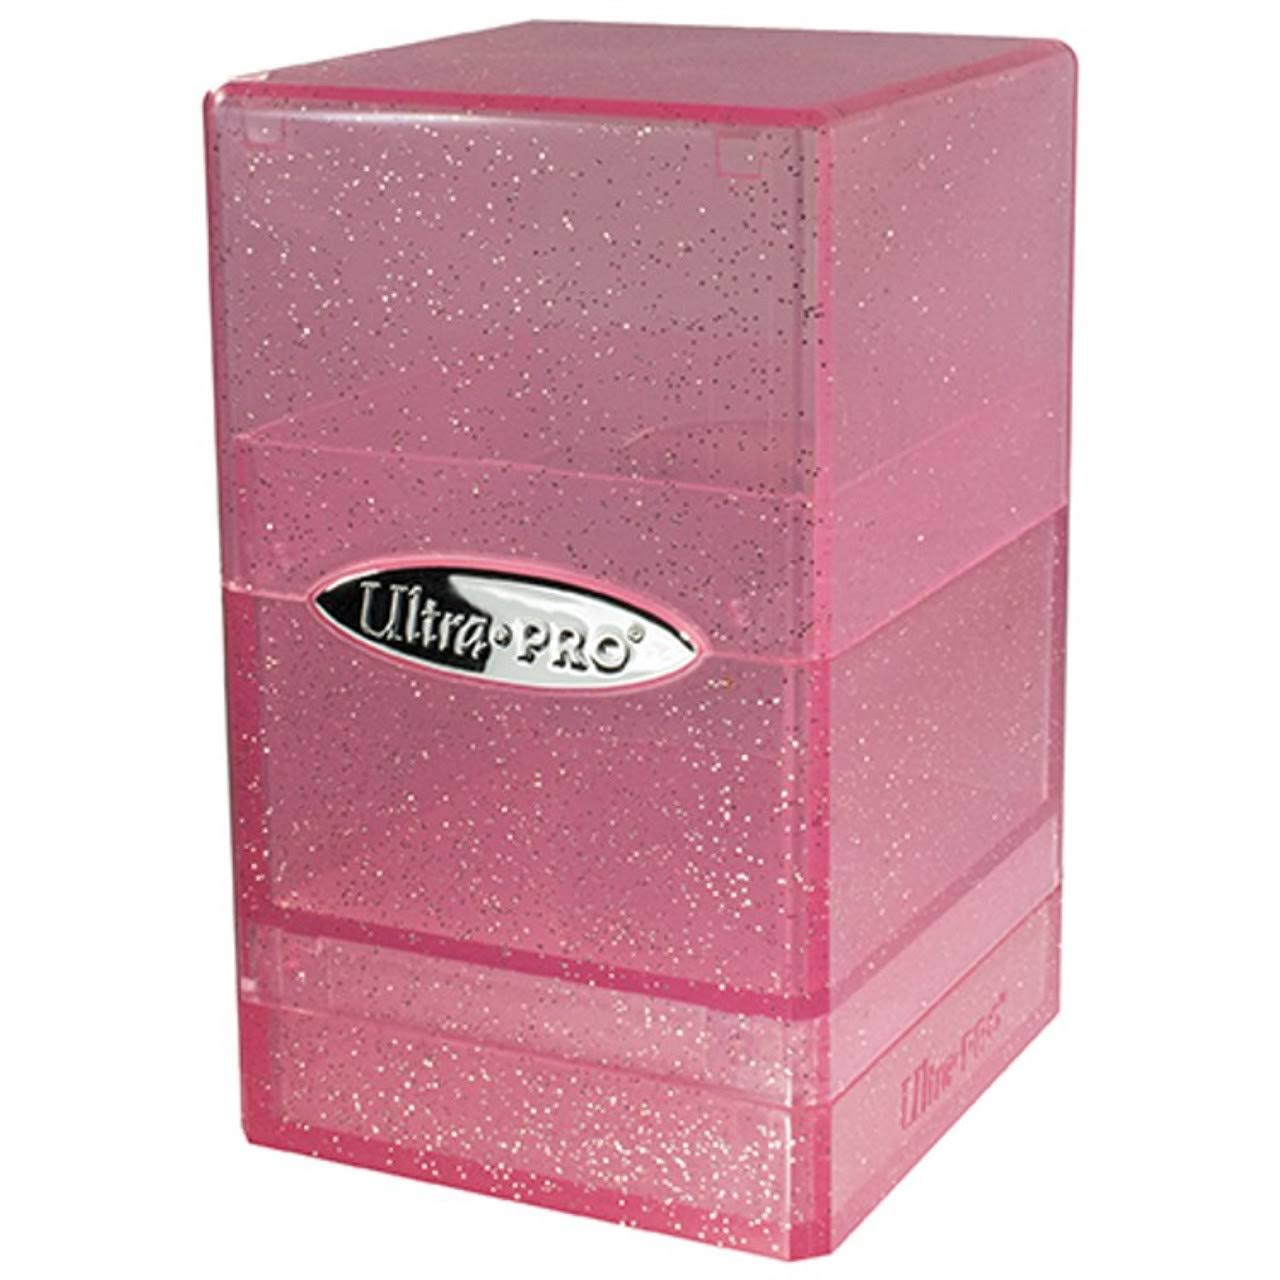 Ultra Pro Box - Glitter Satin Tower - Pink